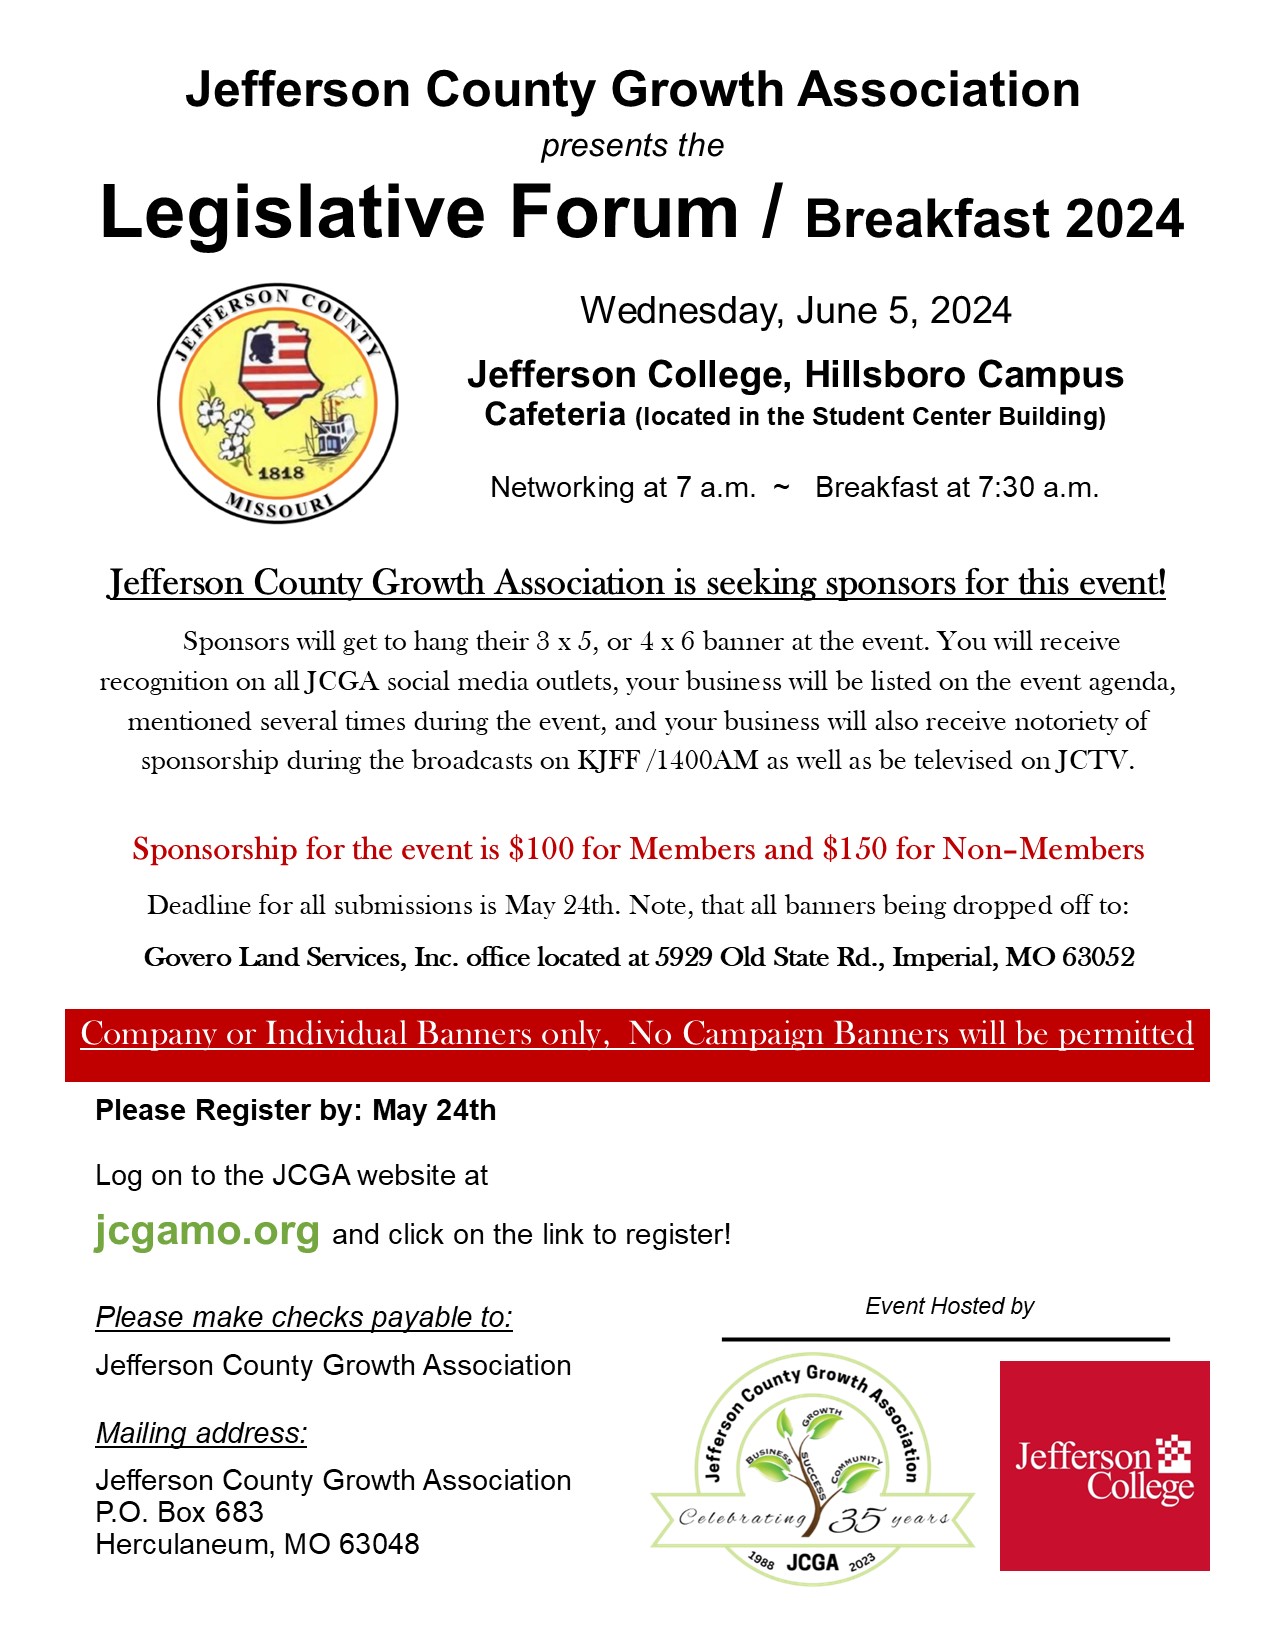 Sponsor Letter for 2024 Legislative Forum Breakfast